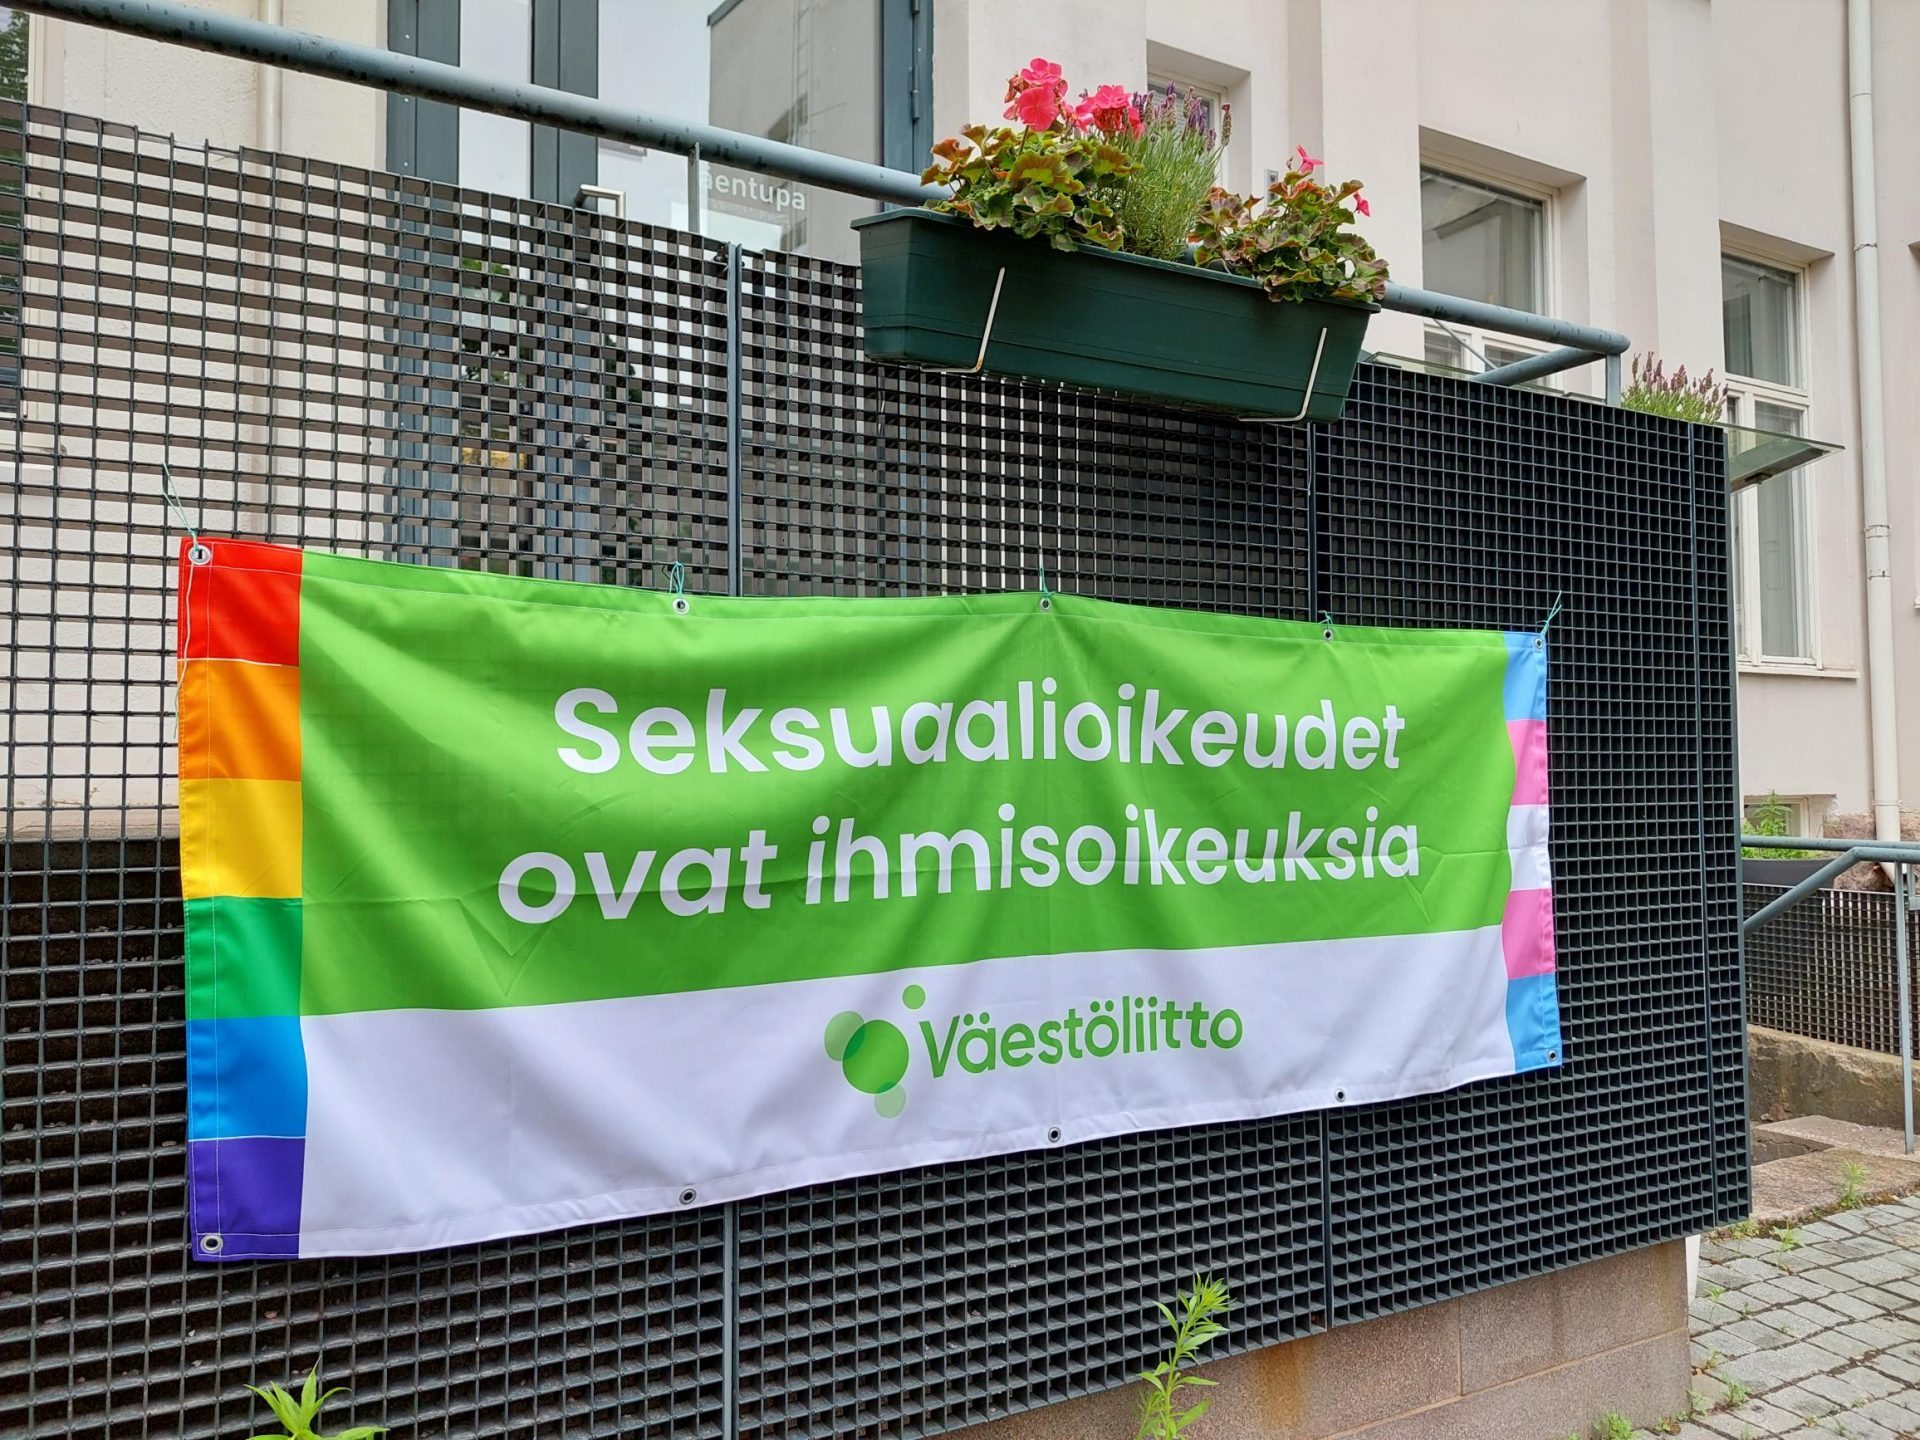 Väestöliiton Pride-banderolli on ripustettu Väestöliiton talon sisäpihalle. Siinä lukee Seksuaalioikeudet ovat ihmisoikeuksia.